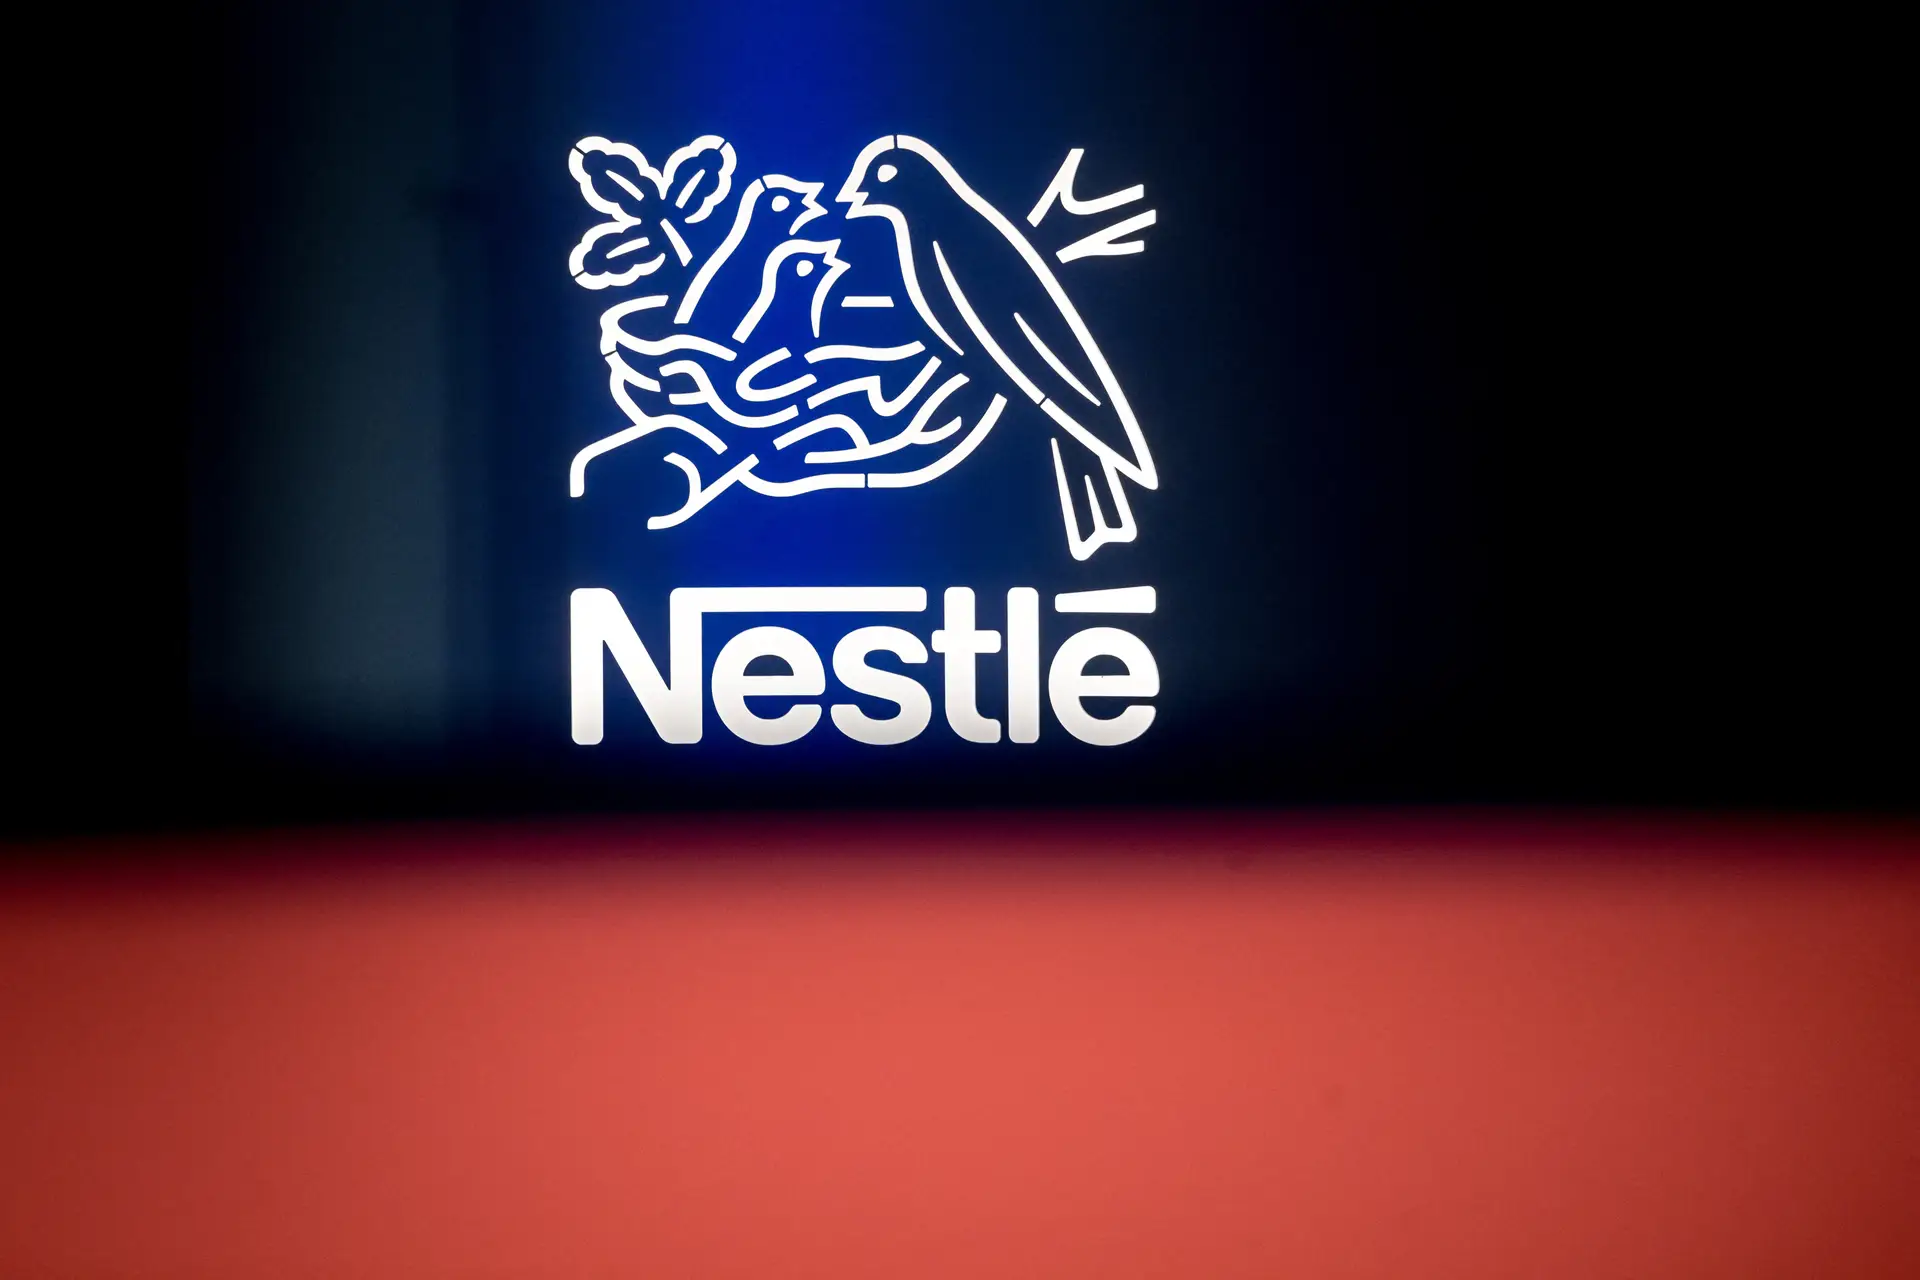 Nestlé responde com promessa a críticas sobre produtos com elevados níveis de sal, açúcar e gorduras